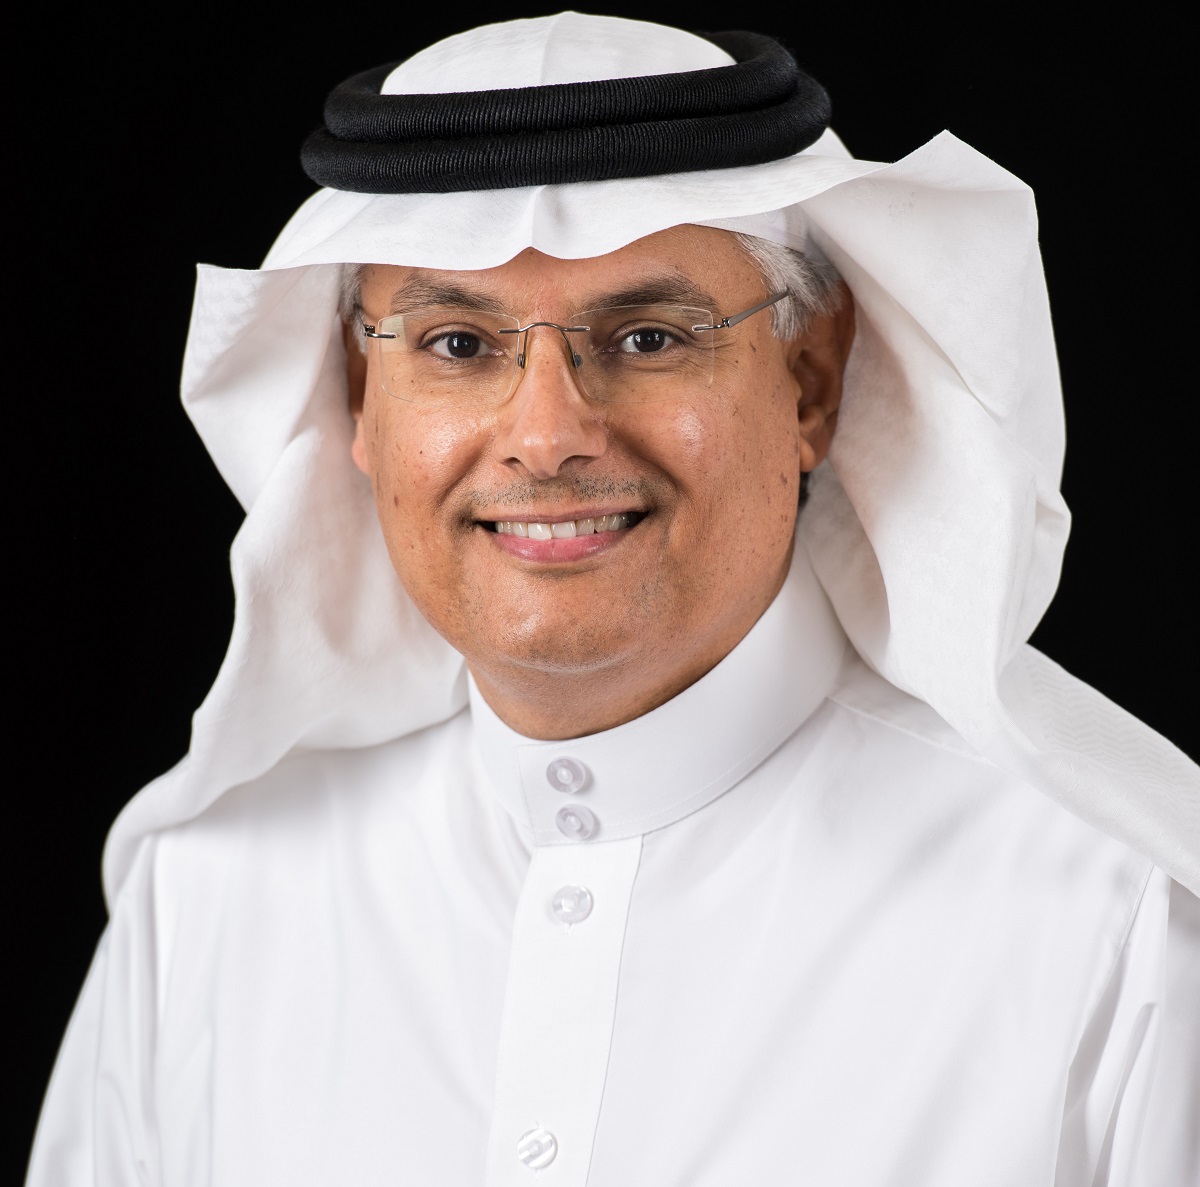 النائب الأعلى للرئيس للتكرير والتسويق والكيميائيات في أرامكو، محمد القحطاني